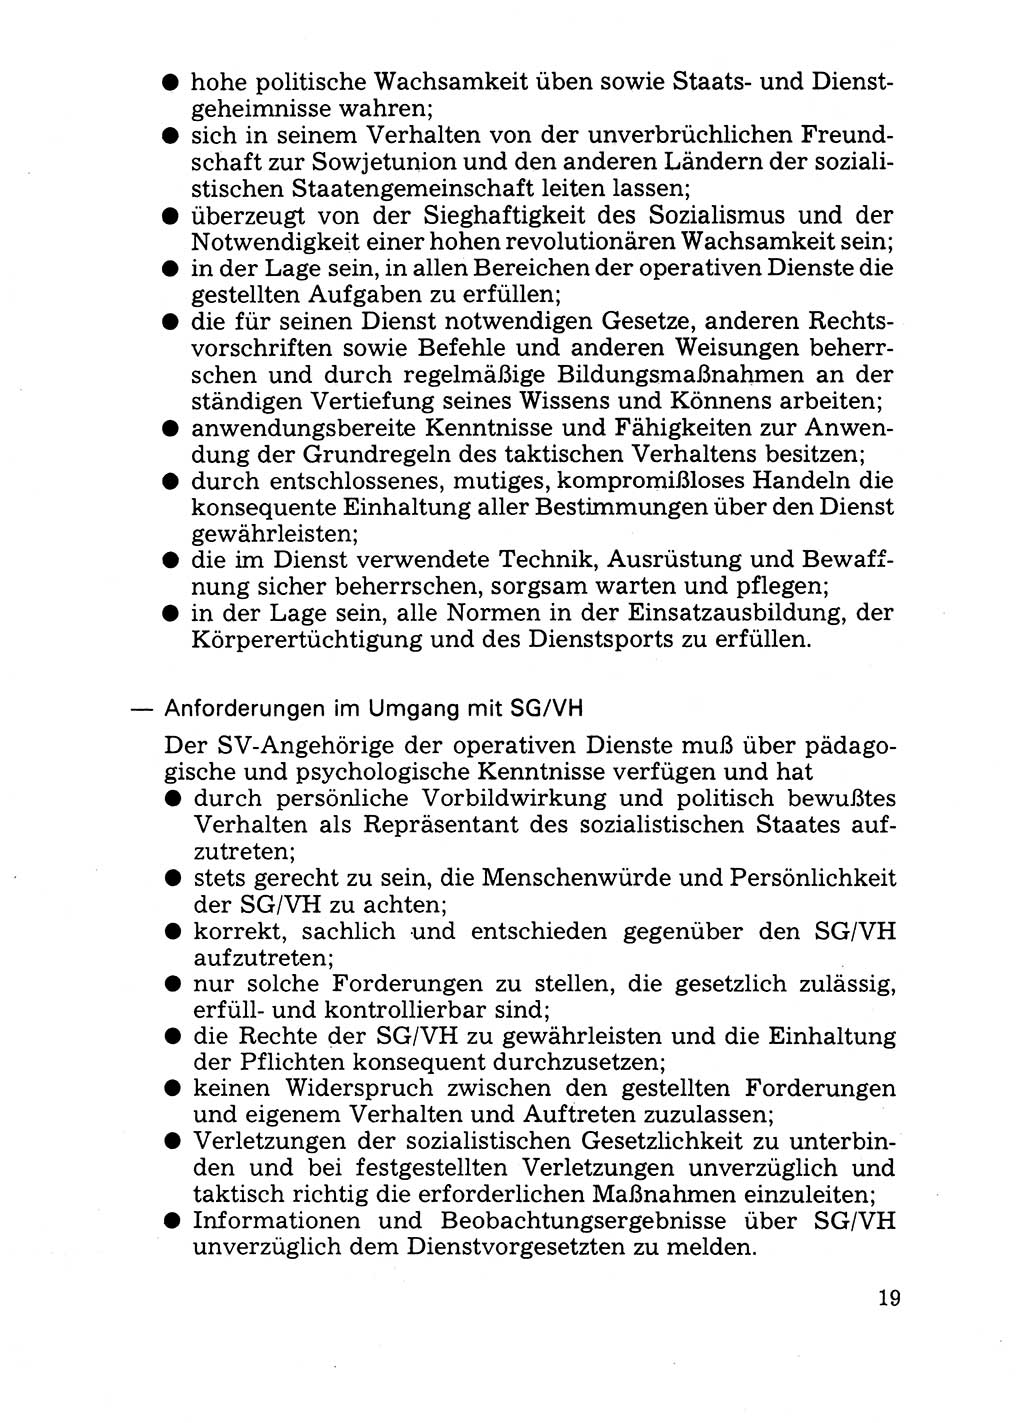 Handbuch für operative Dienste, Abteilung Strafvollzug (SV) [Ministerium des Innern (MdI) Deutsche Demokratische Republik (DDR)] 1981, Seite 19 (Hb. op. D. Abt. SV MdI DDR 1981, S. 19)